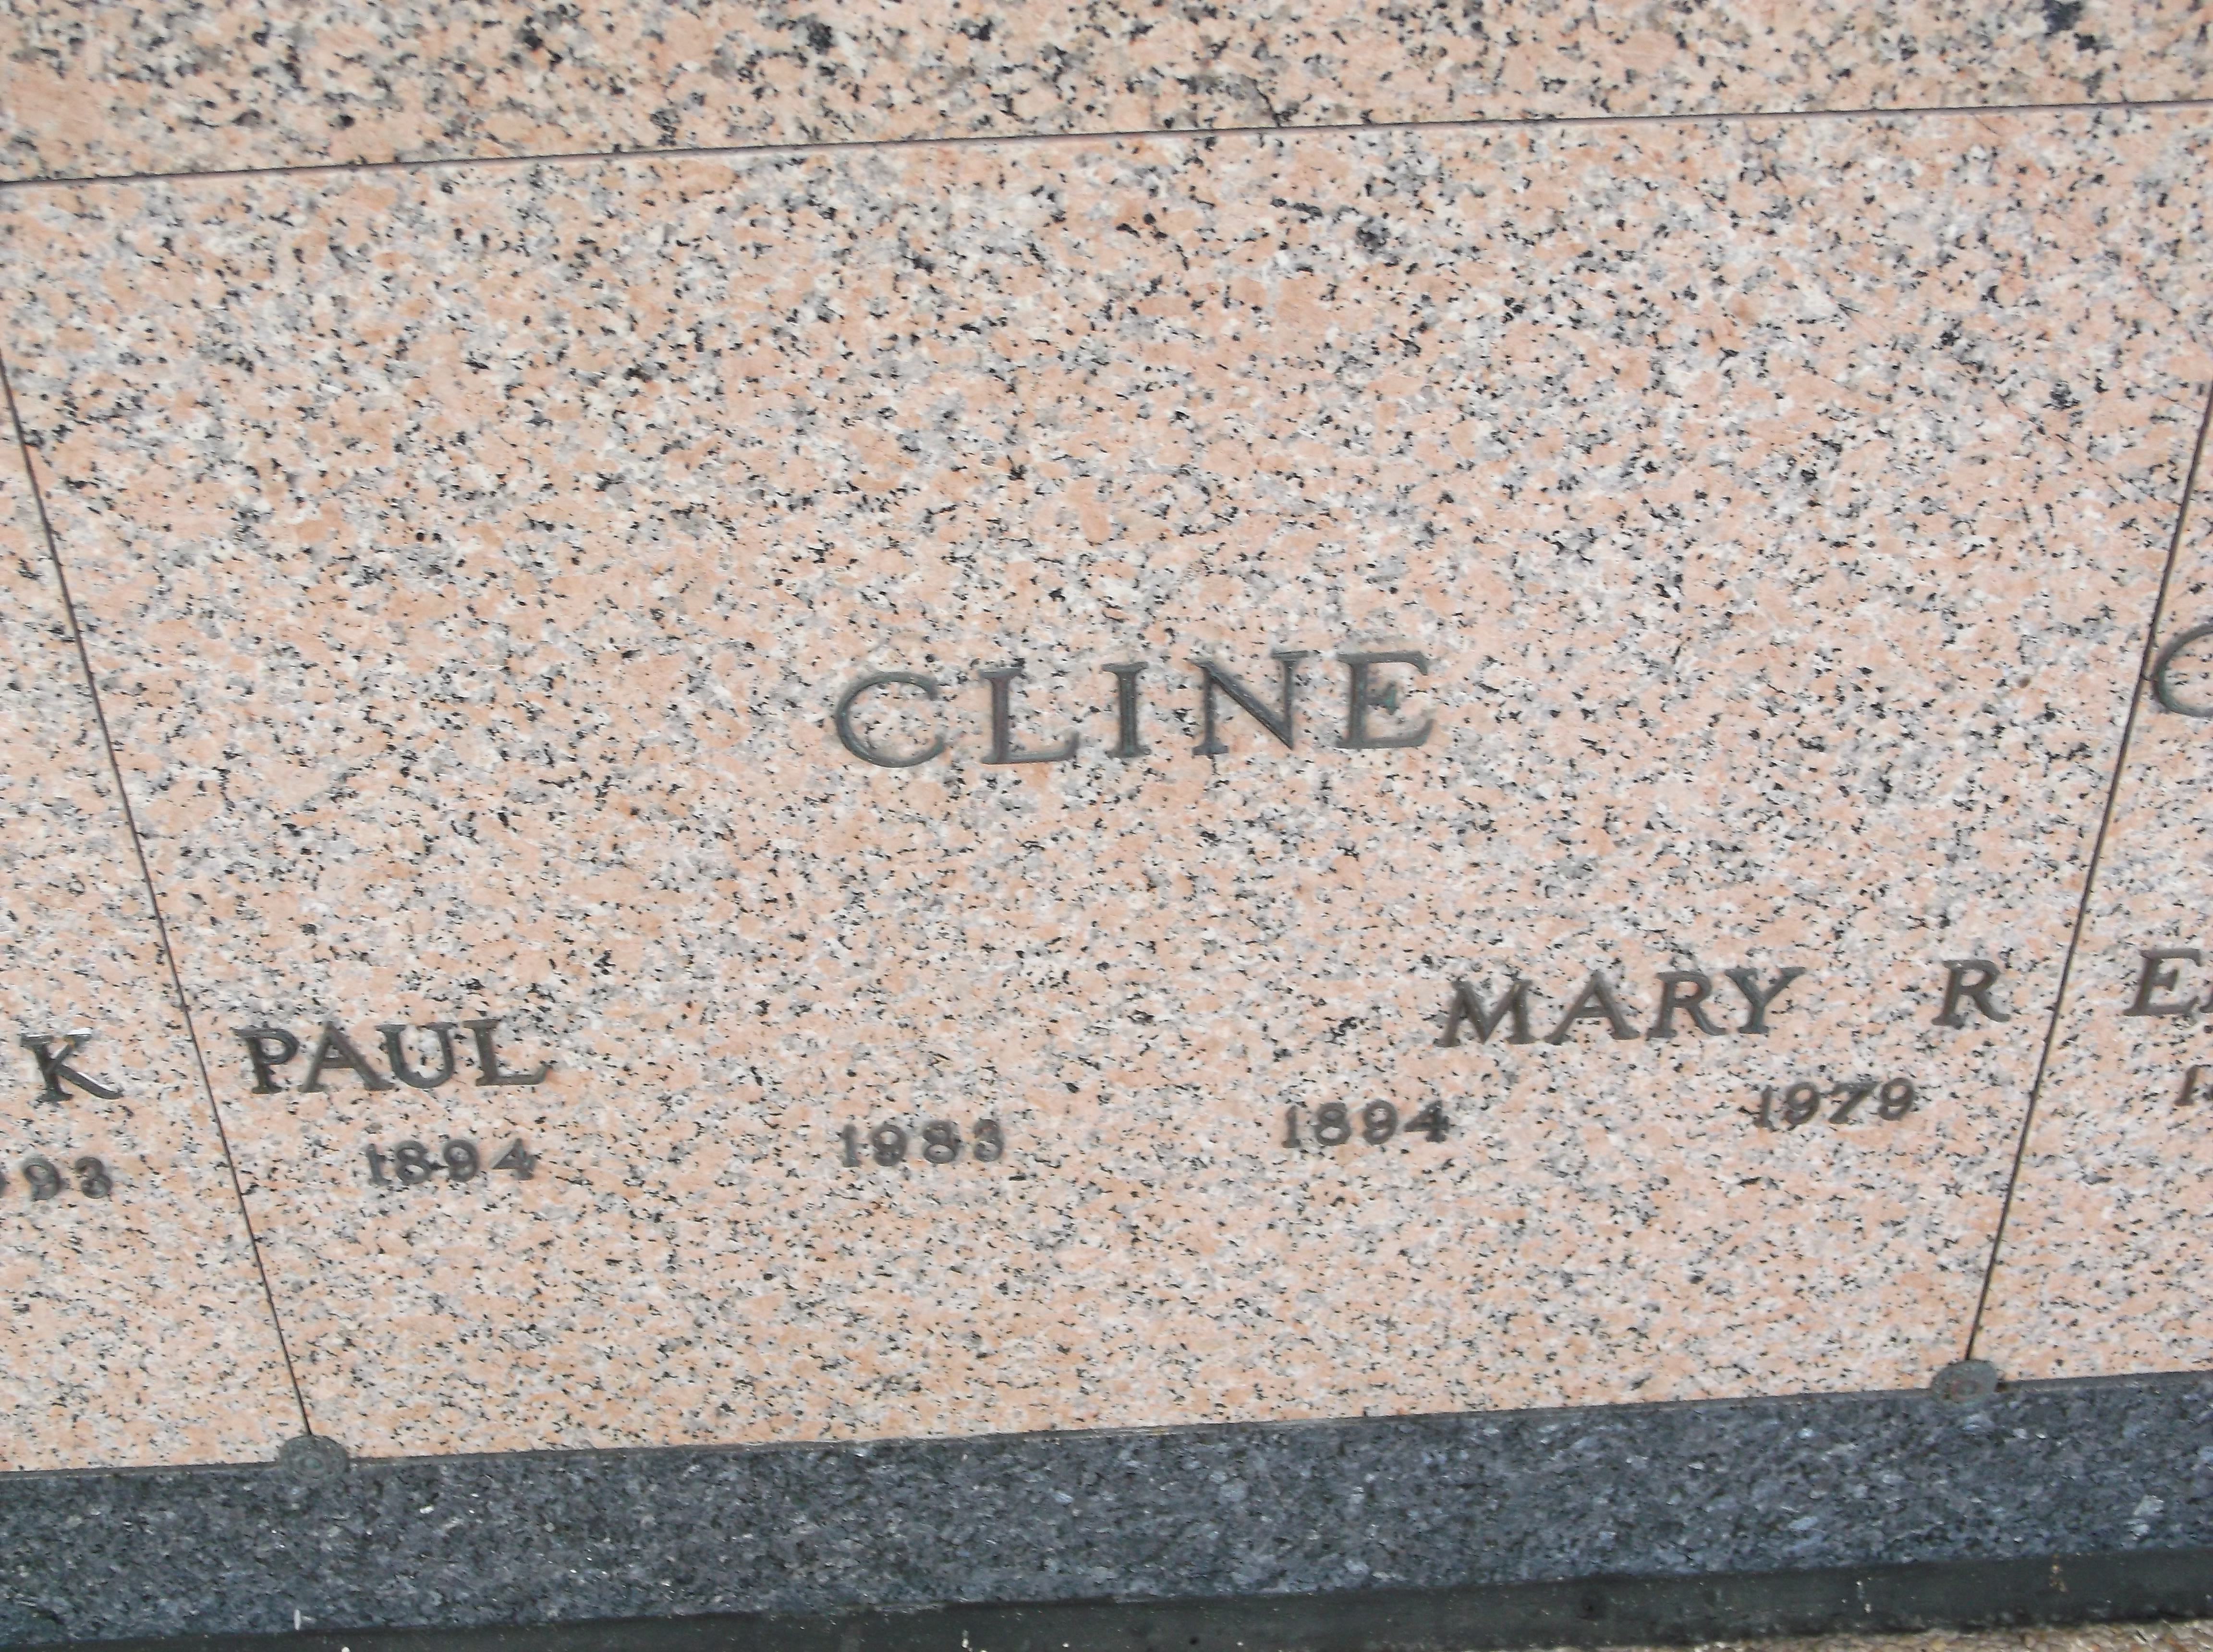 Mary R Cline